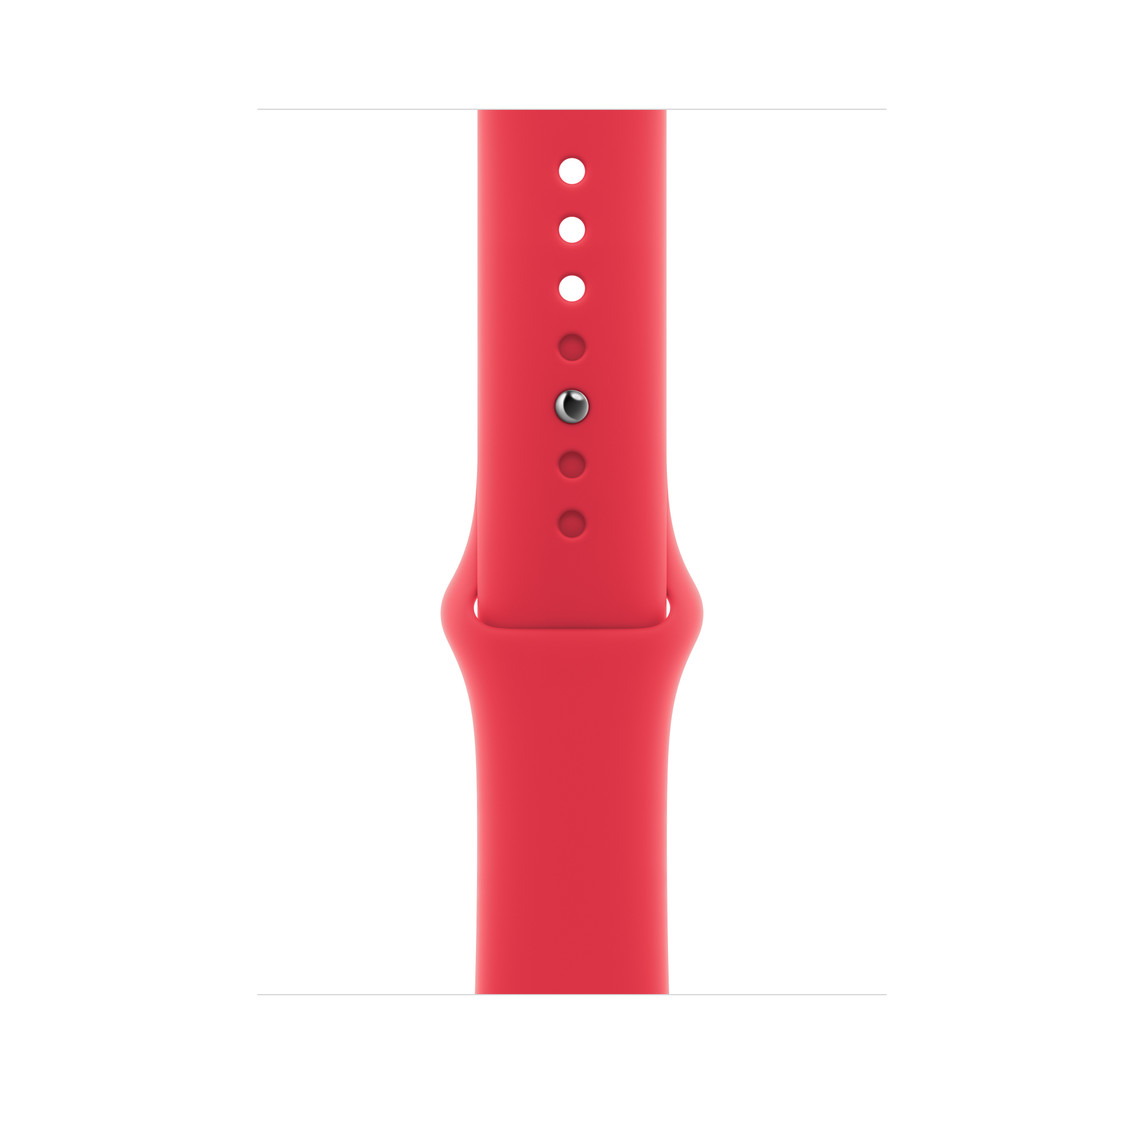 红色运动型表带，展示顺滑的氟橡胶材质和按扣加收拢式表扣。